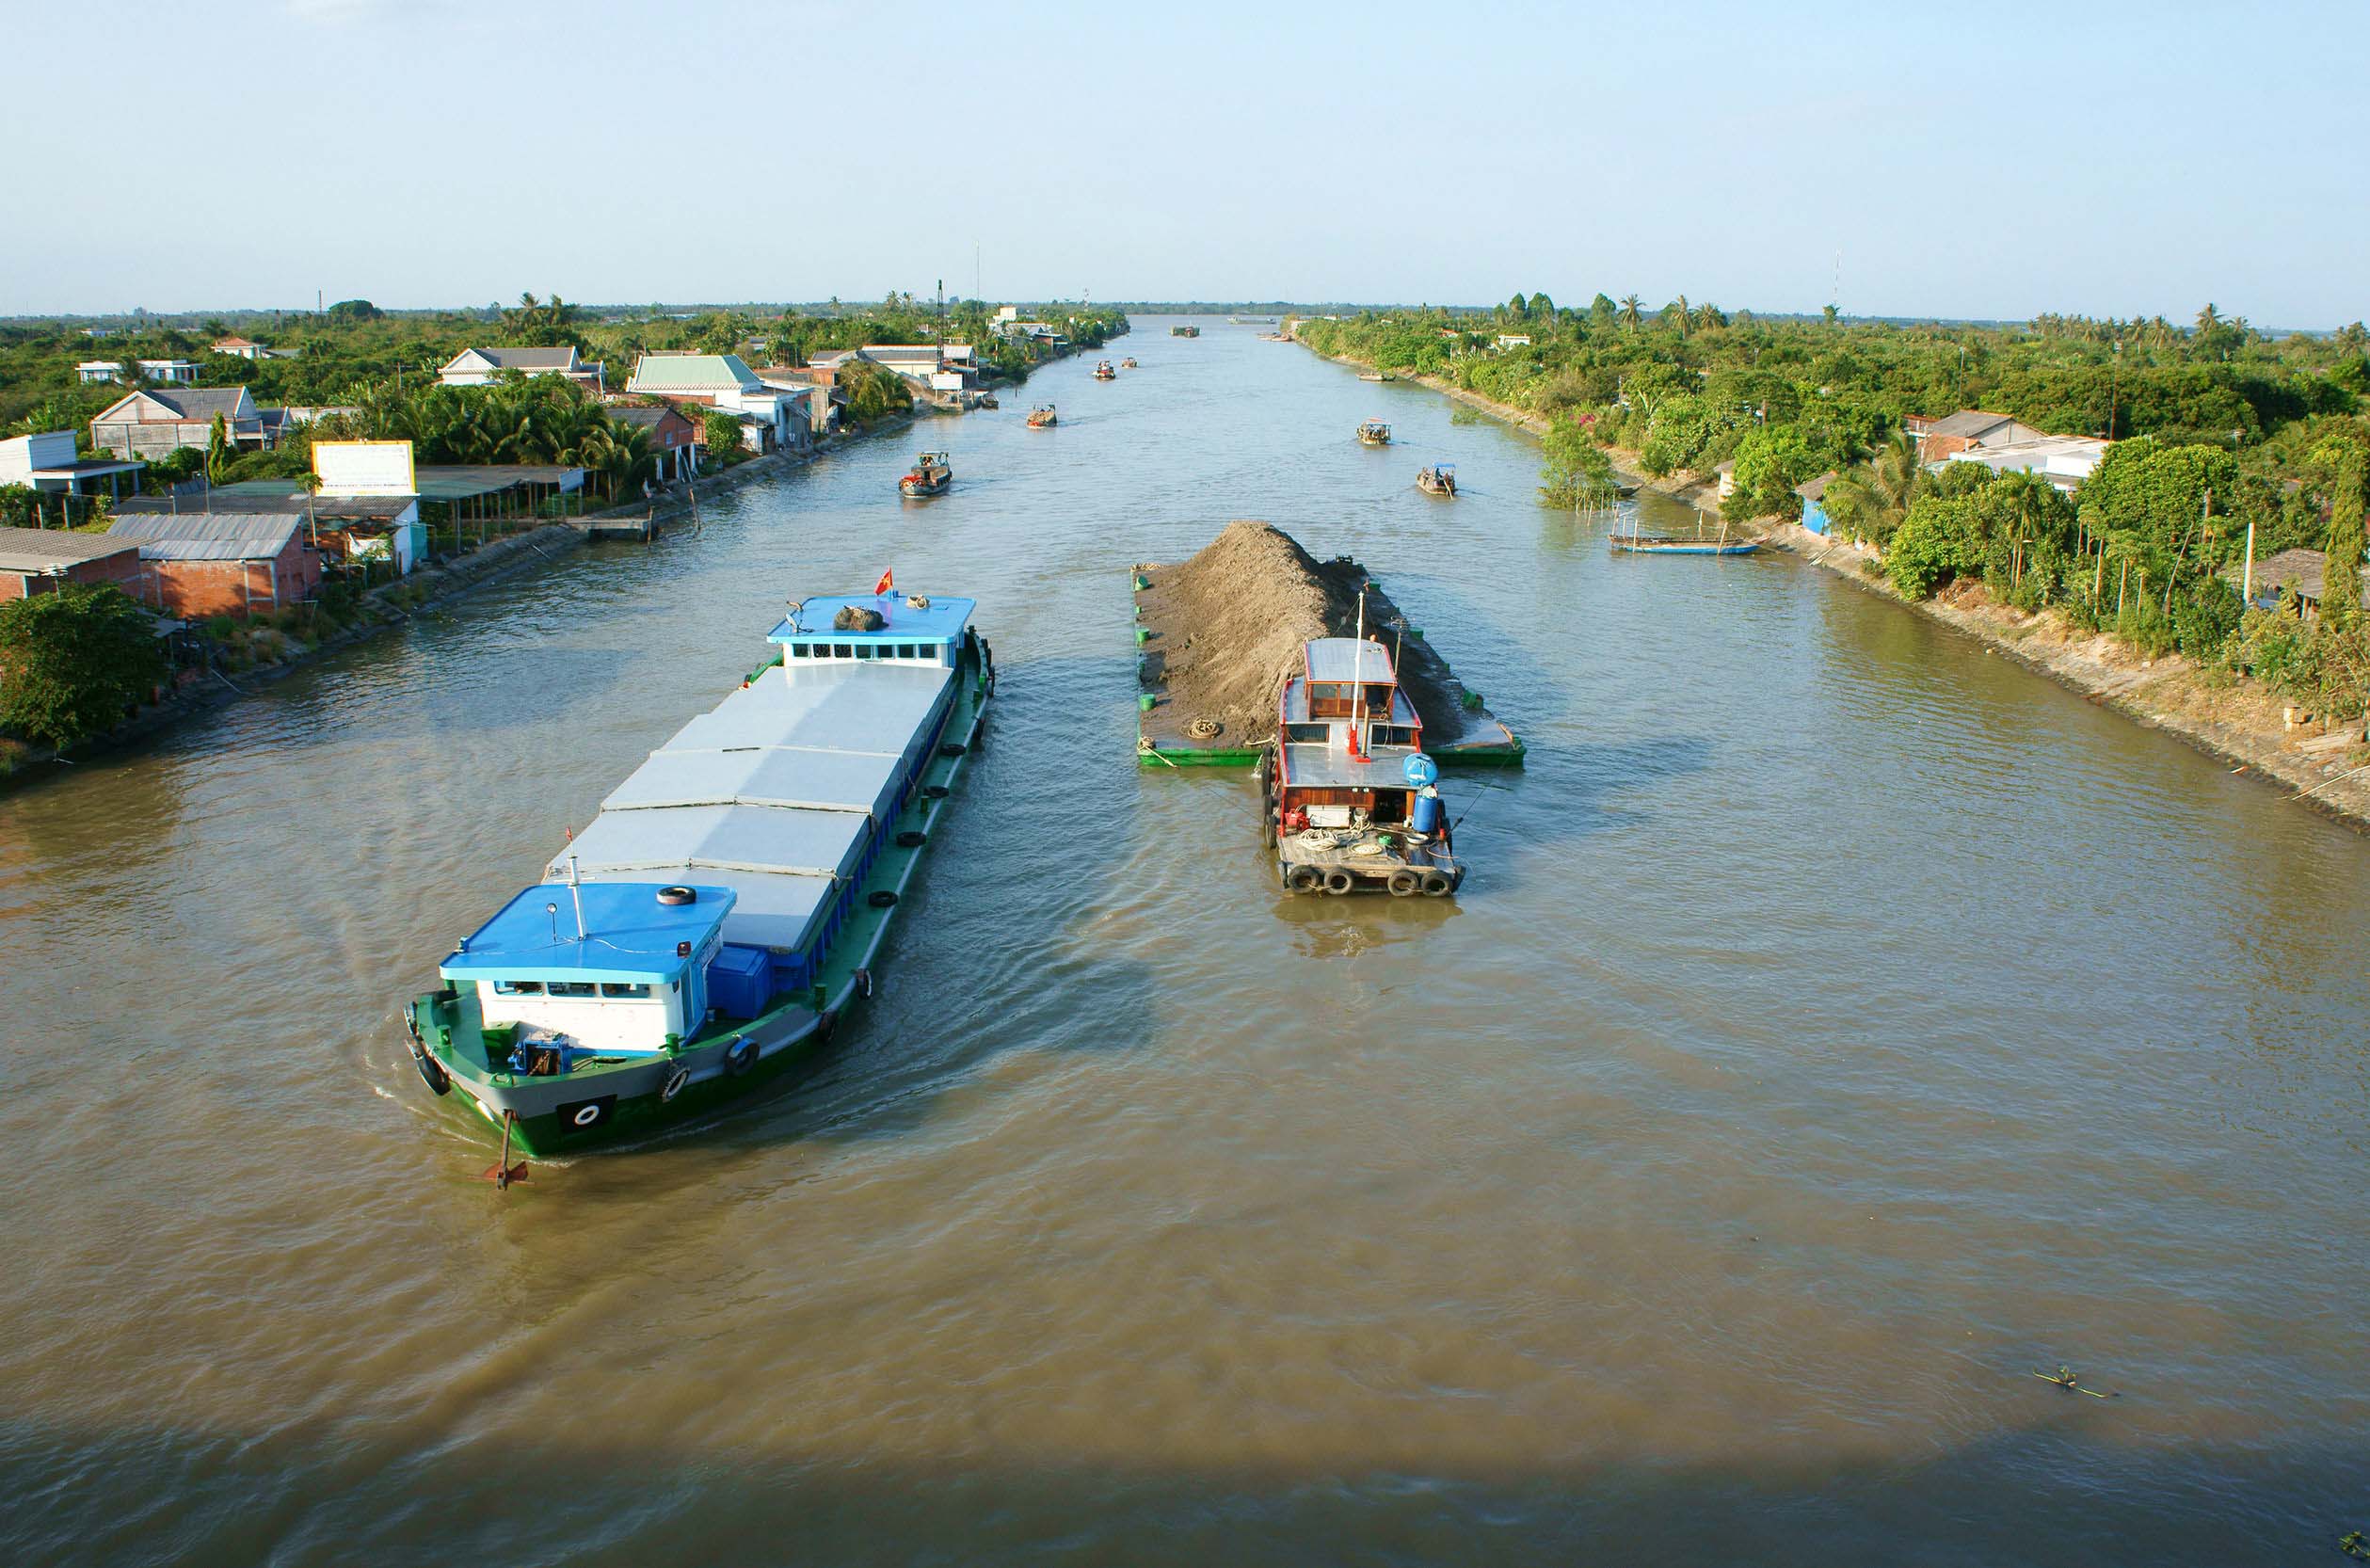 Giao thông đường thủy là phần thiết yếu trong cuộc sống và giao thương ở khu vực Đông Nam Á.